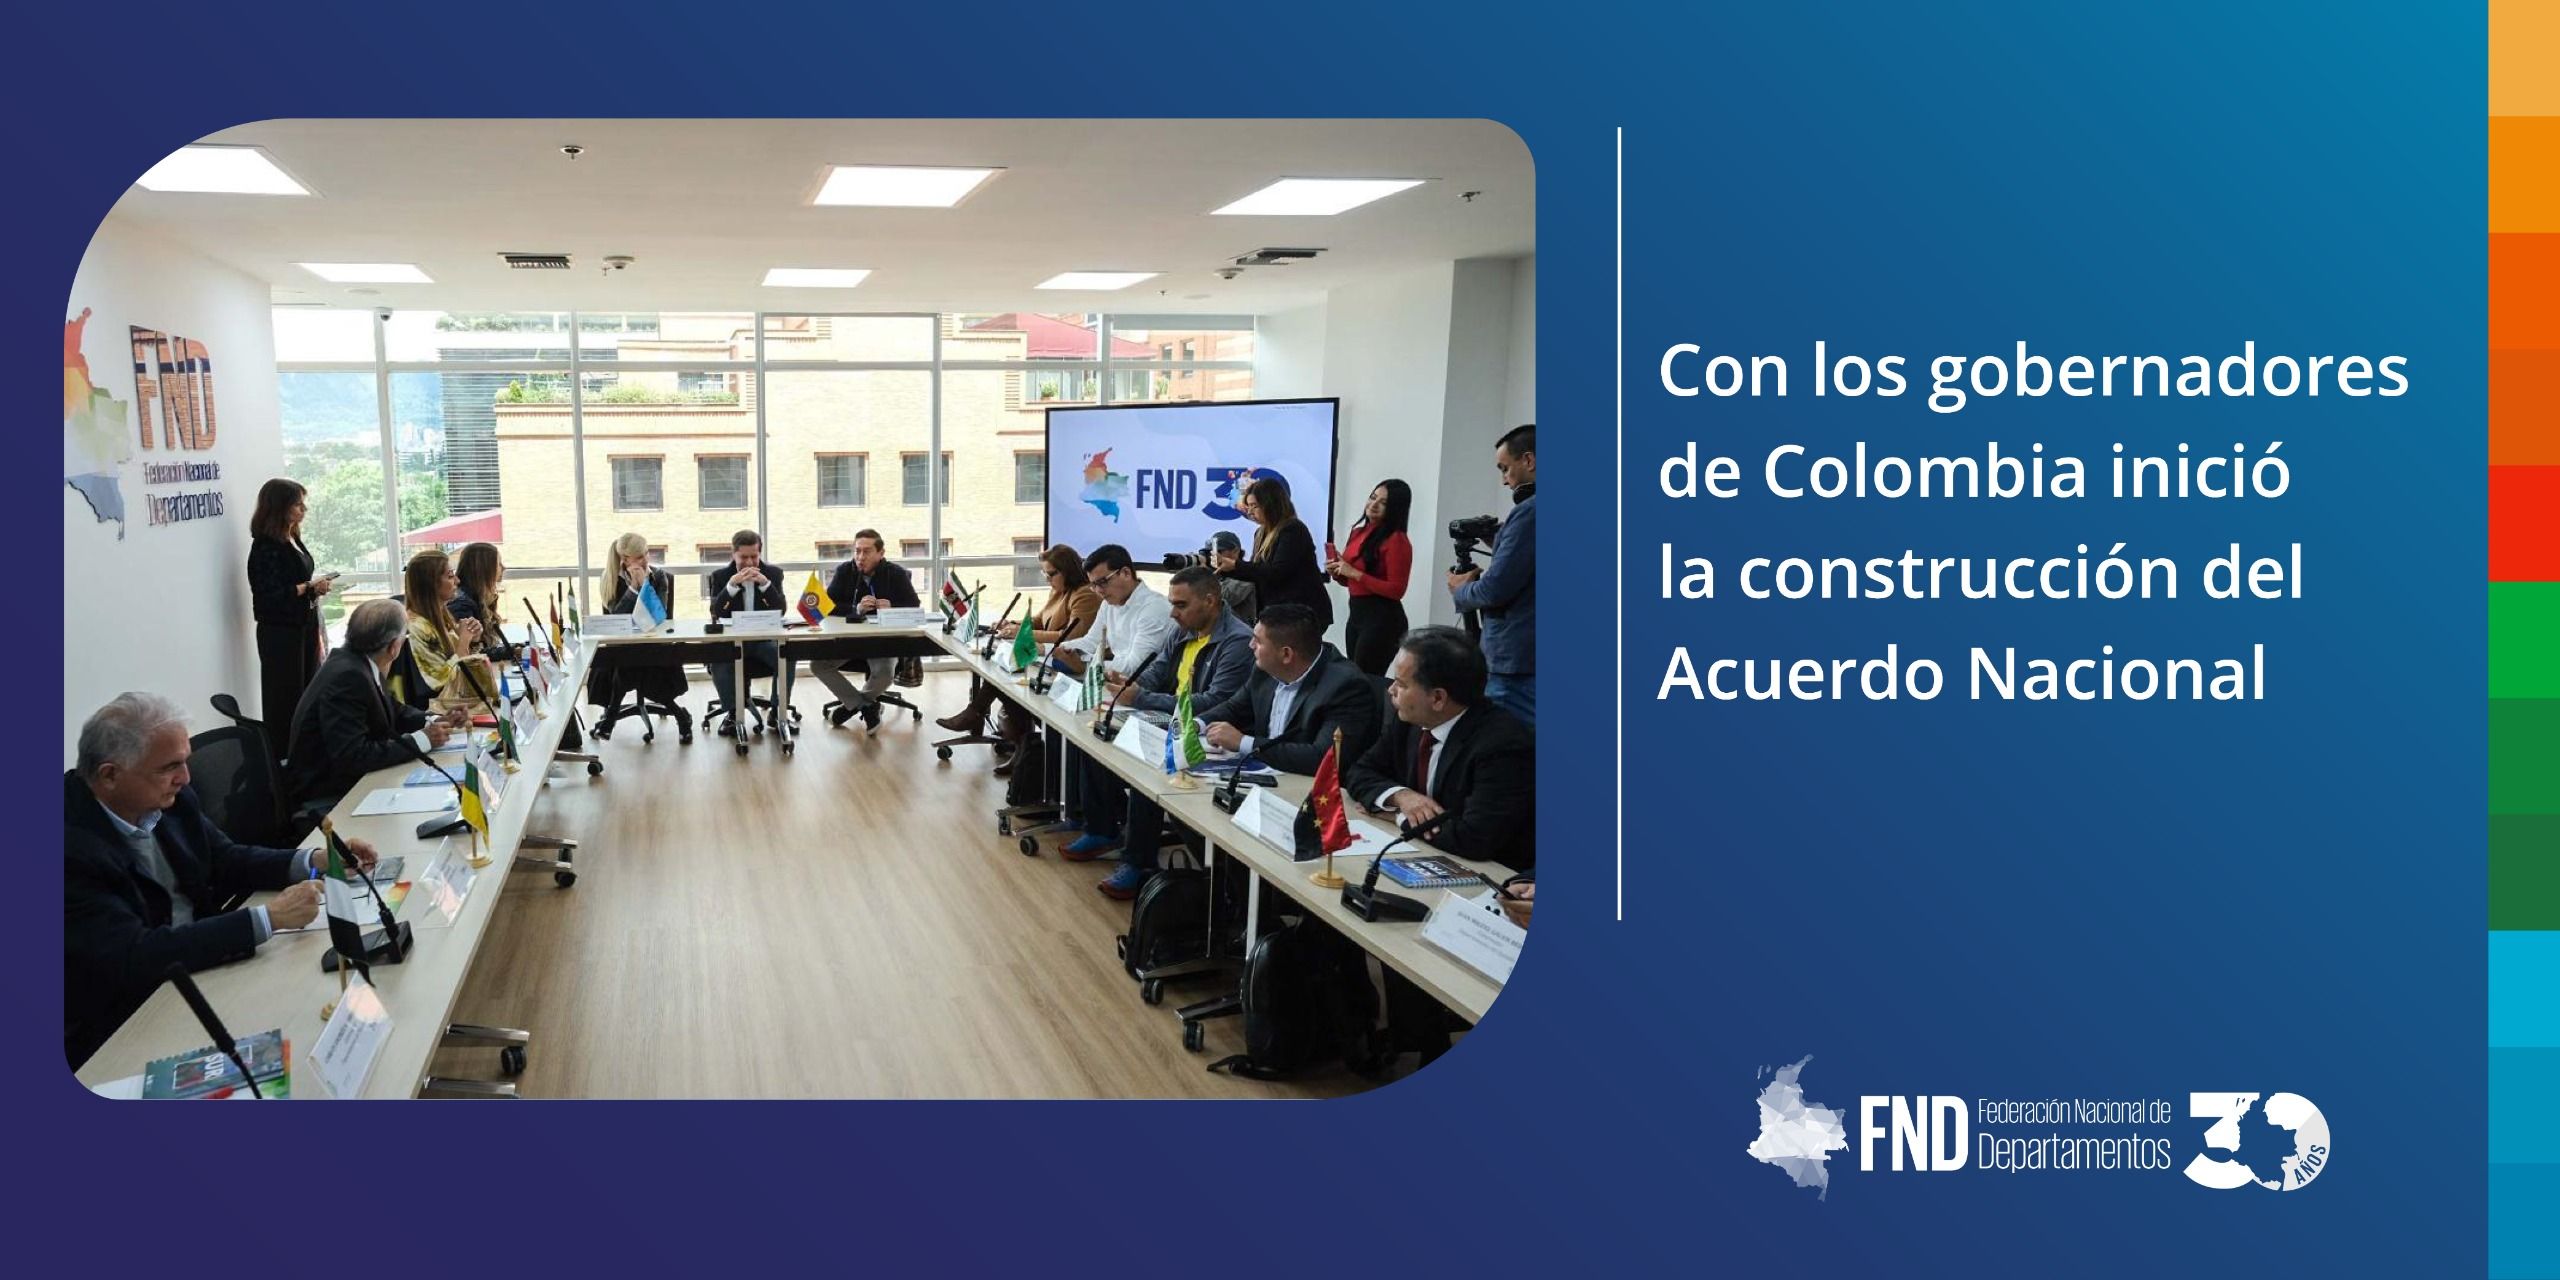 Con los gobernadores de Colombia inició la construcción del Acuerdo Nacional image